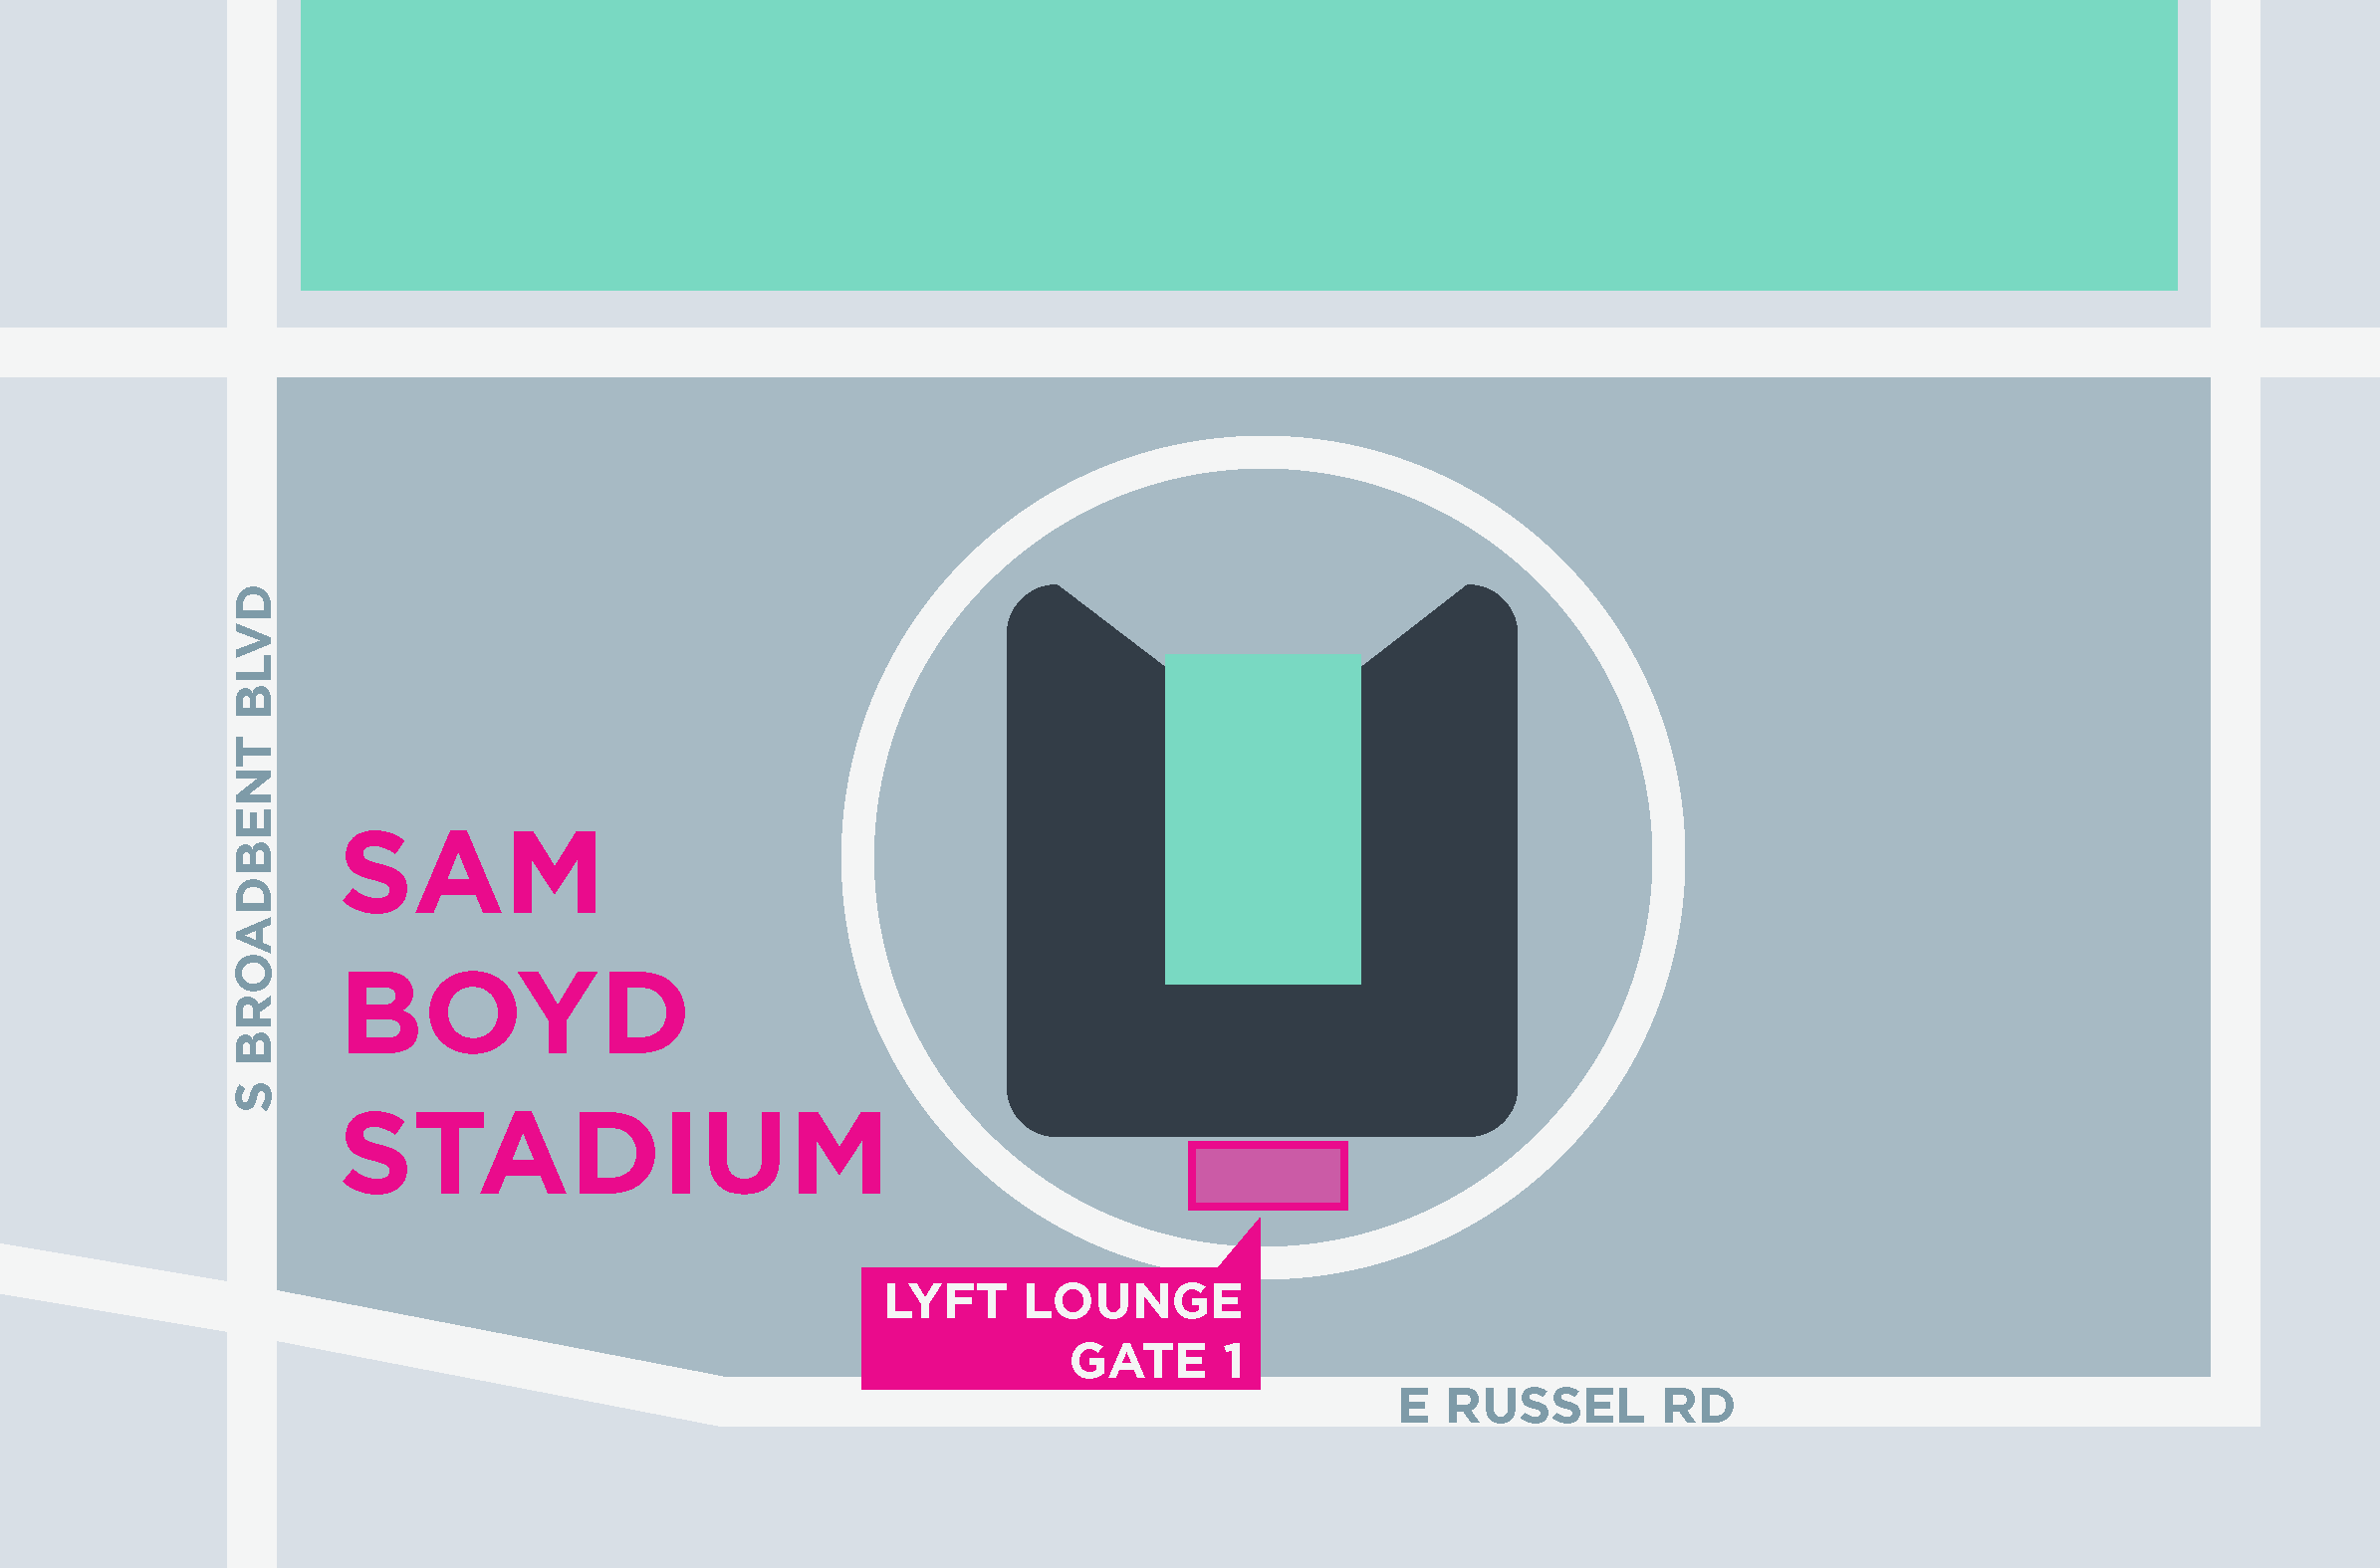 Esta imagen muestra un mapa de Sam Boyd Stadium, incluidas las áreas para recoger y dejar pasajeros.